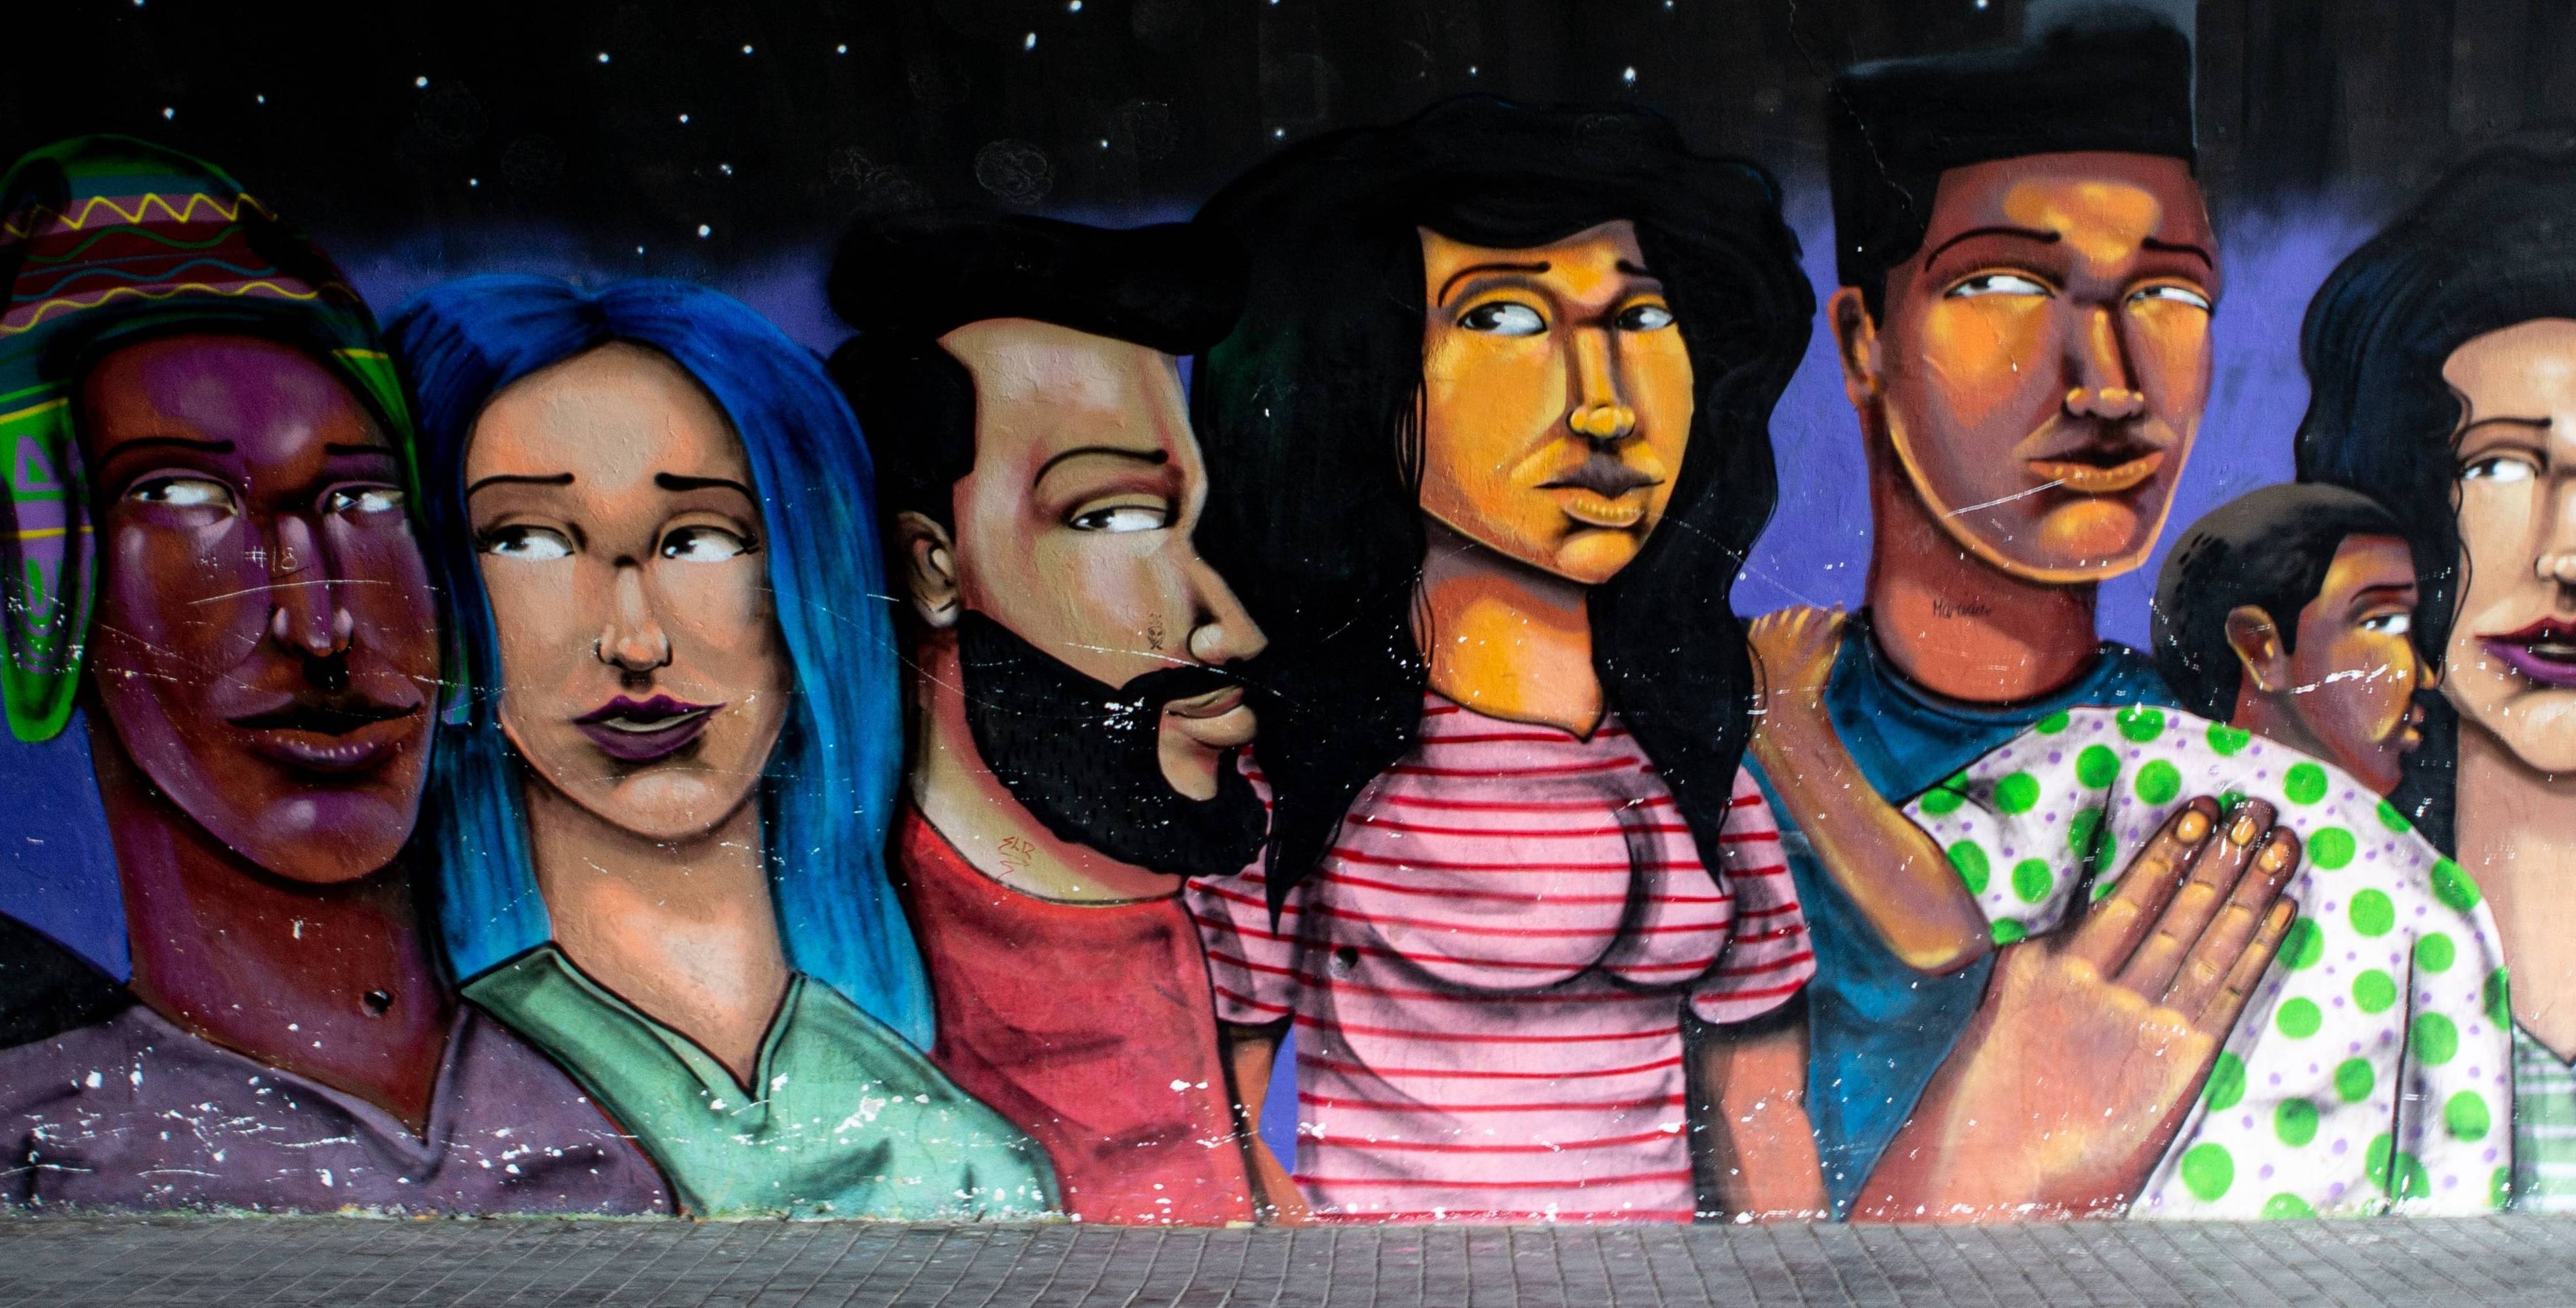 Multicultural mural